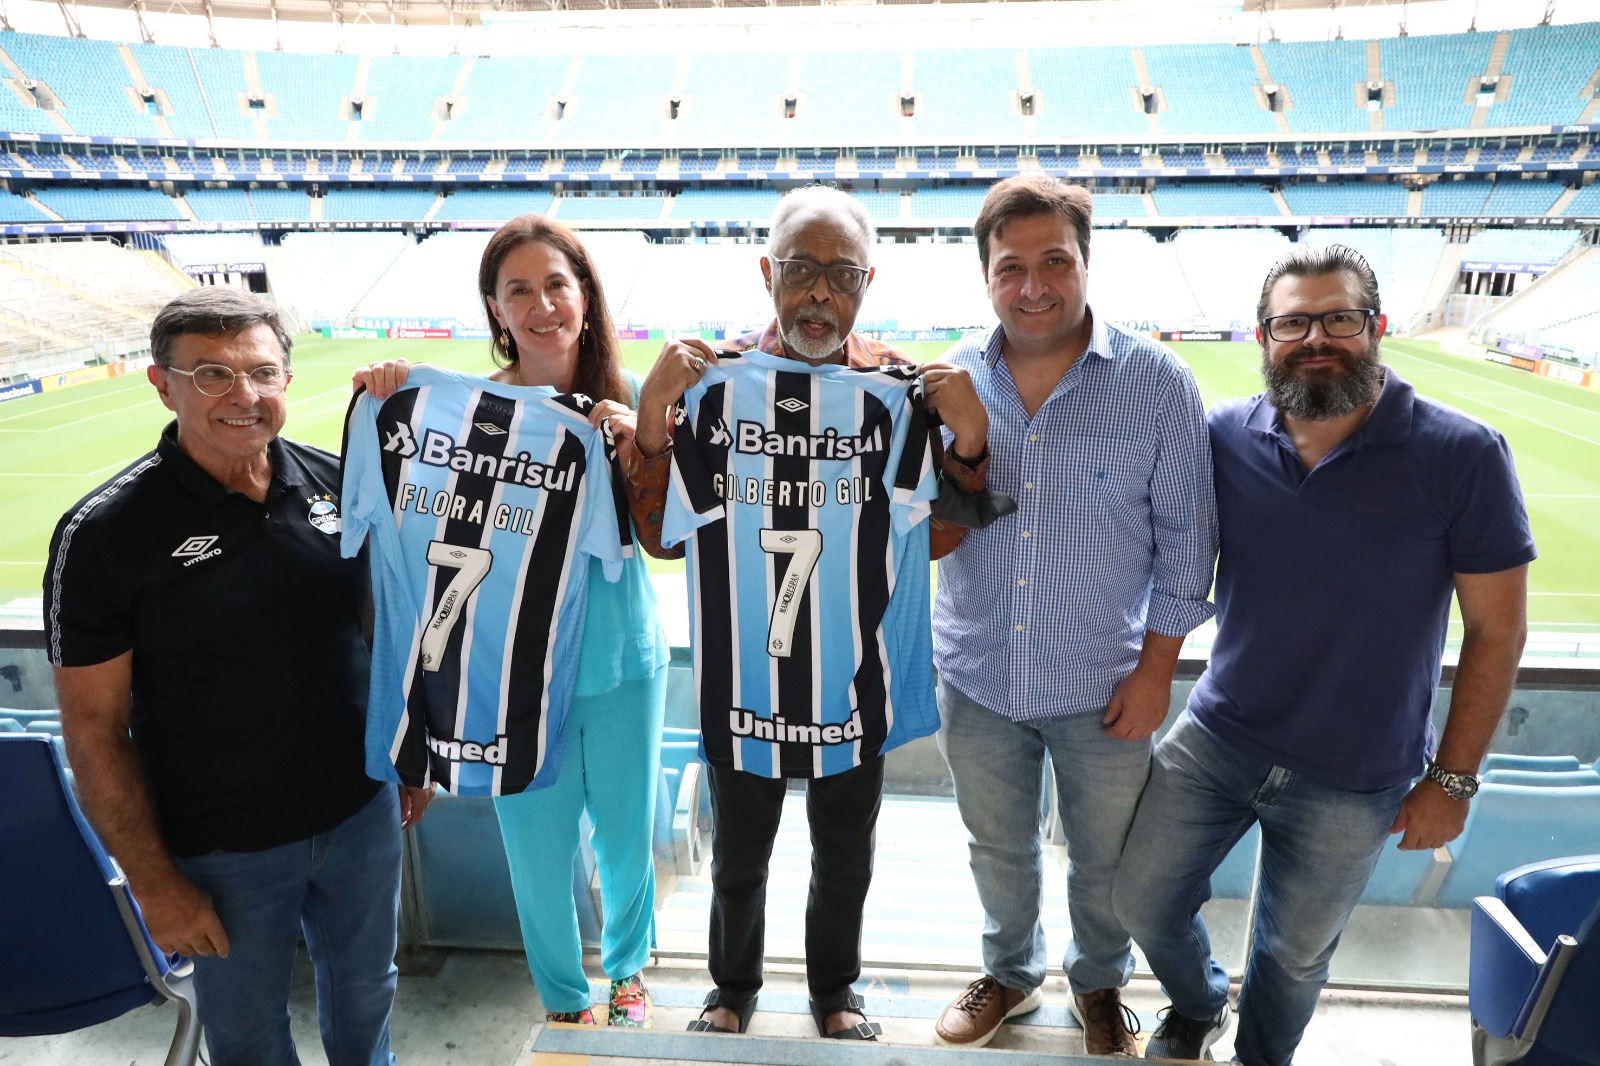 Arena do Grêmio anuncia vendas online para o setor visitante em